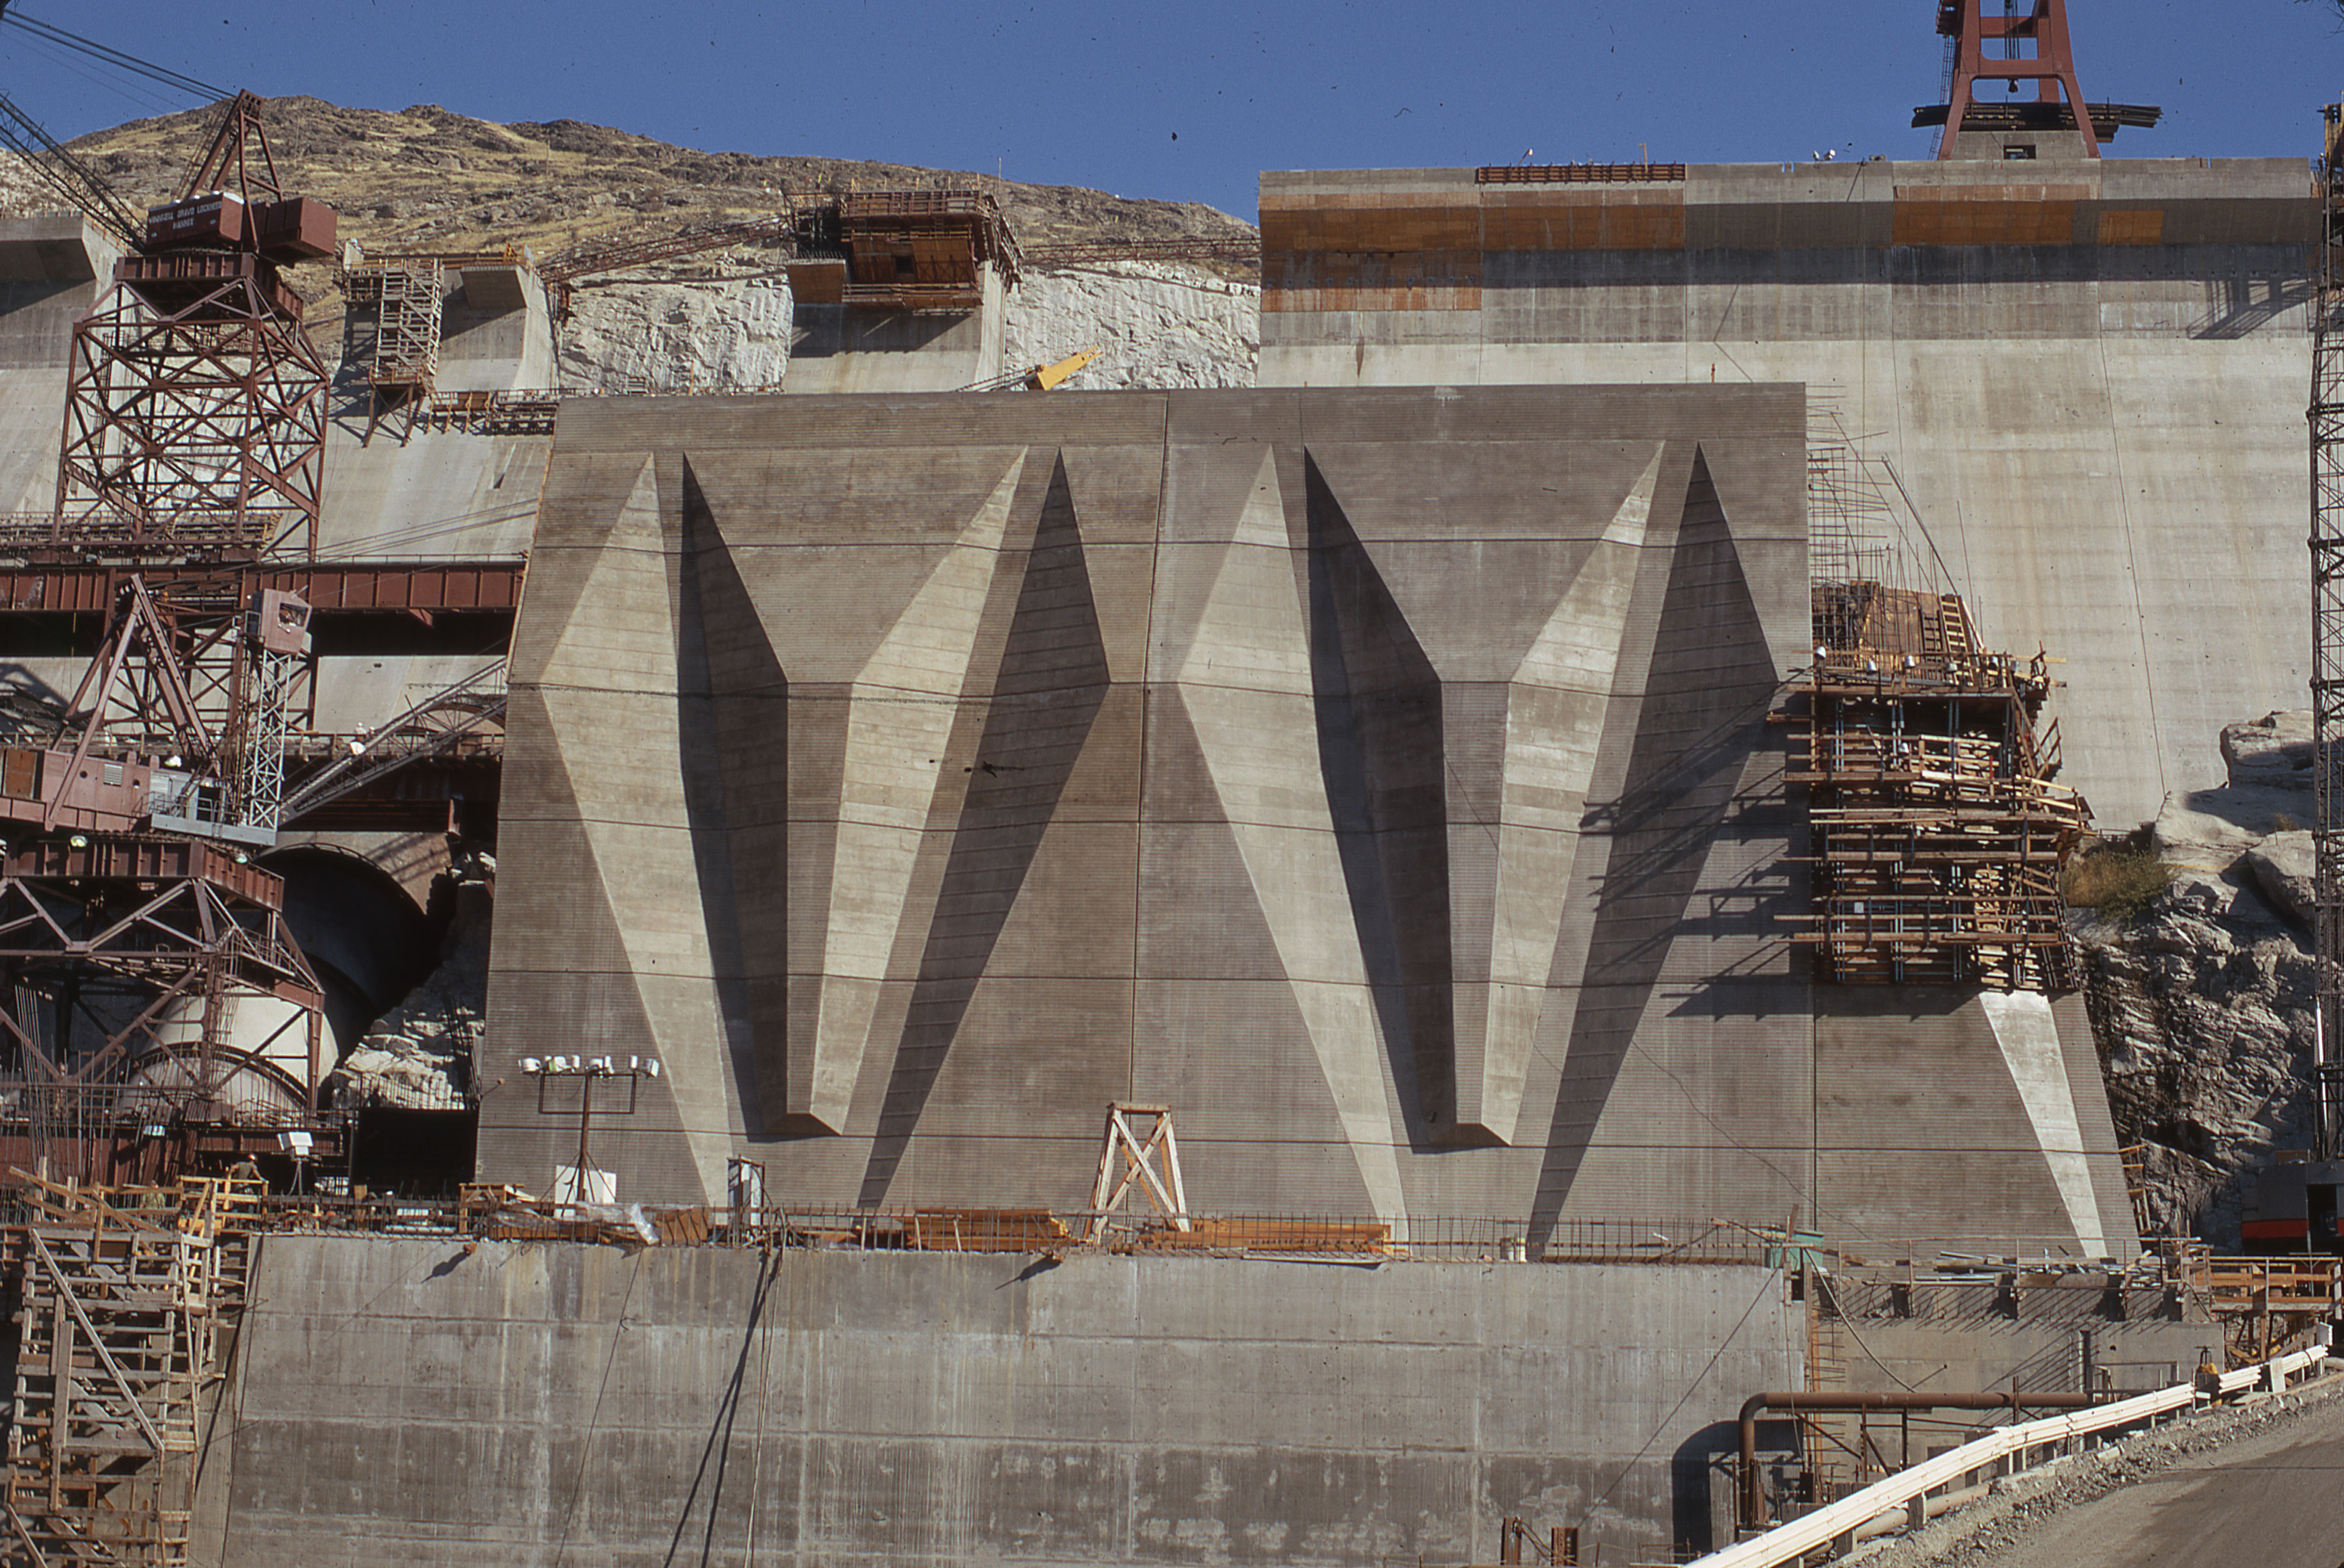 May 5, 1973. Nathaniel Washington Power Plant construction at Grand Coulee Dam